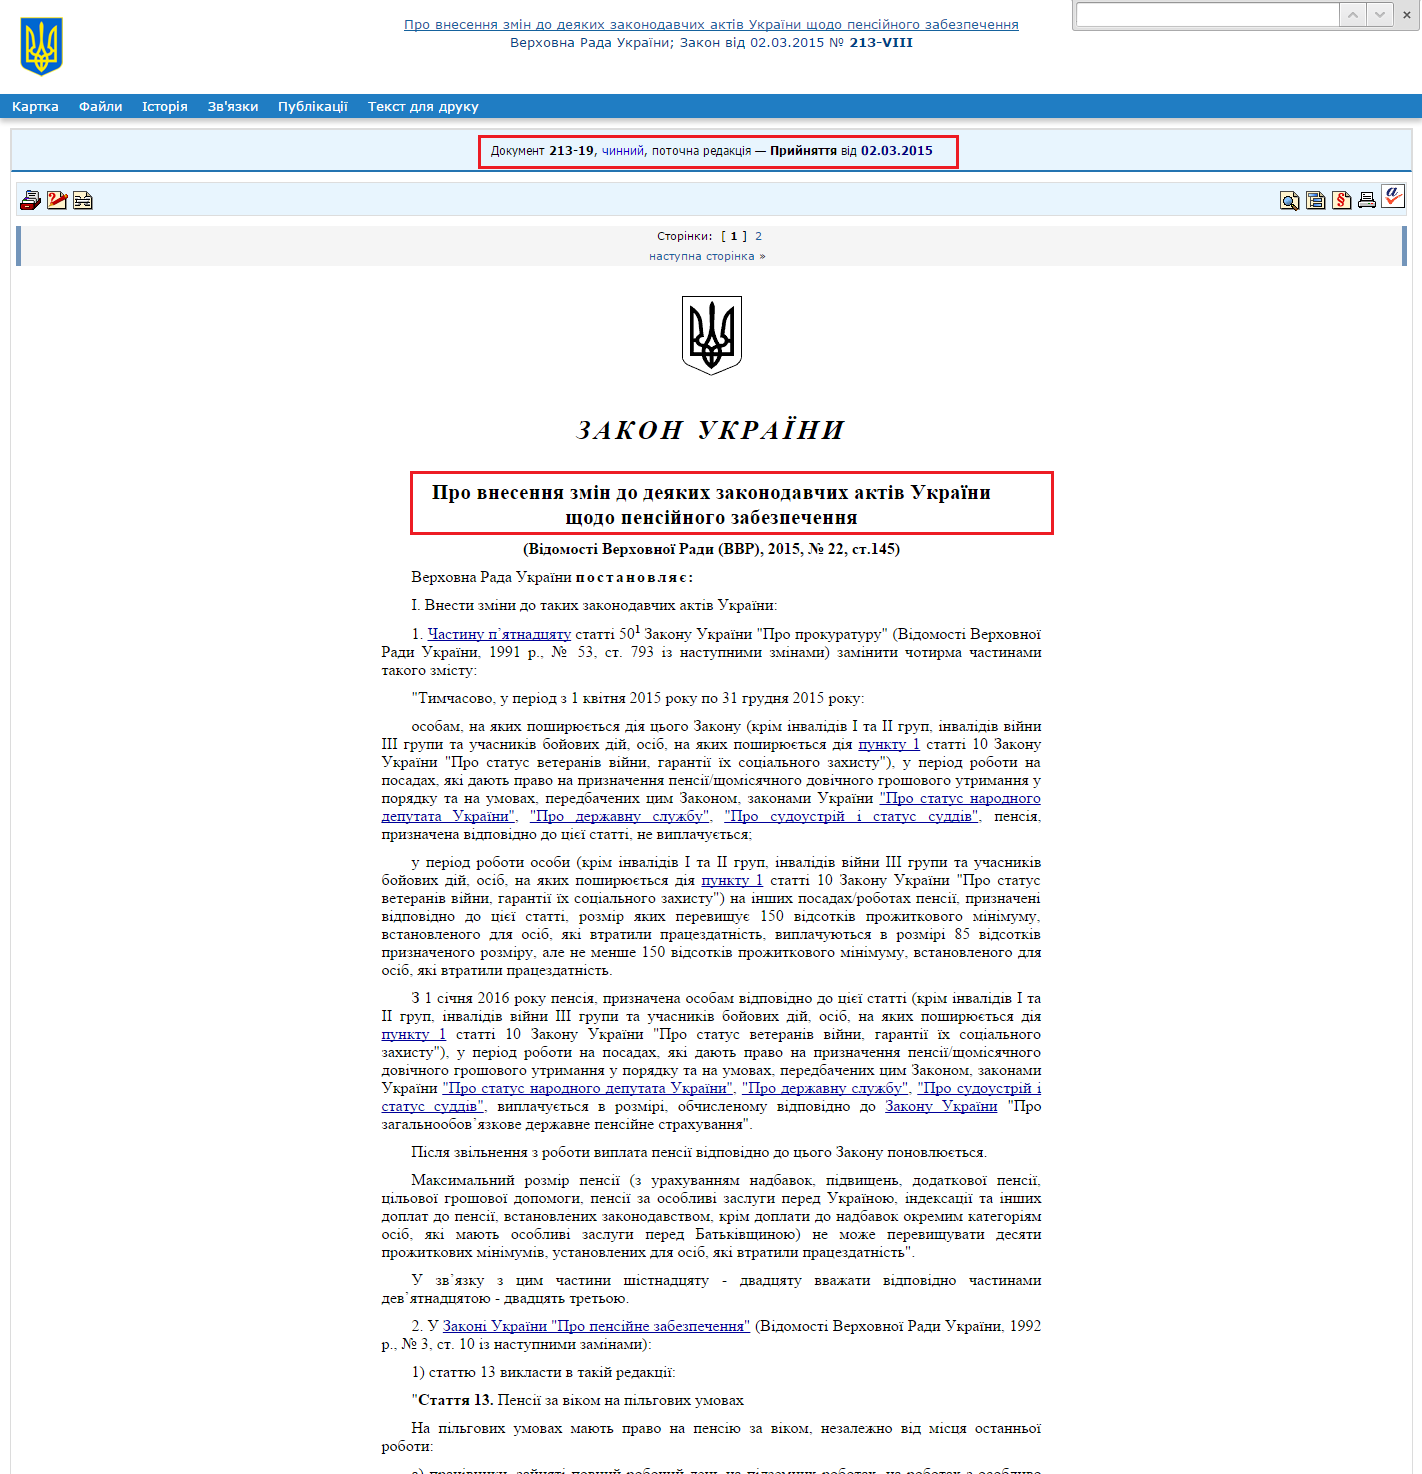 http://zakon5.rada.gov.ua/laws/show/213-19